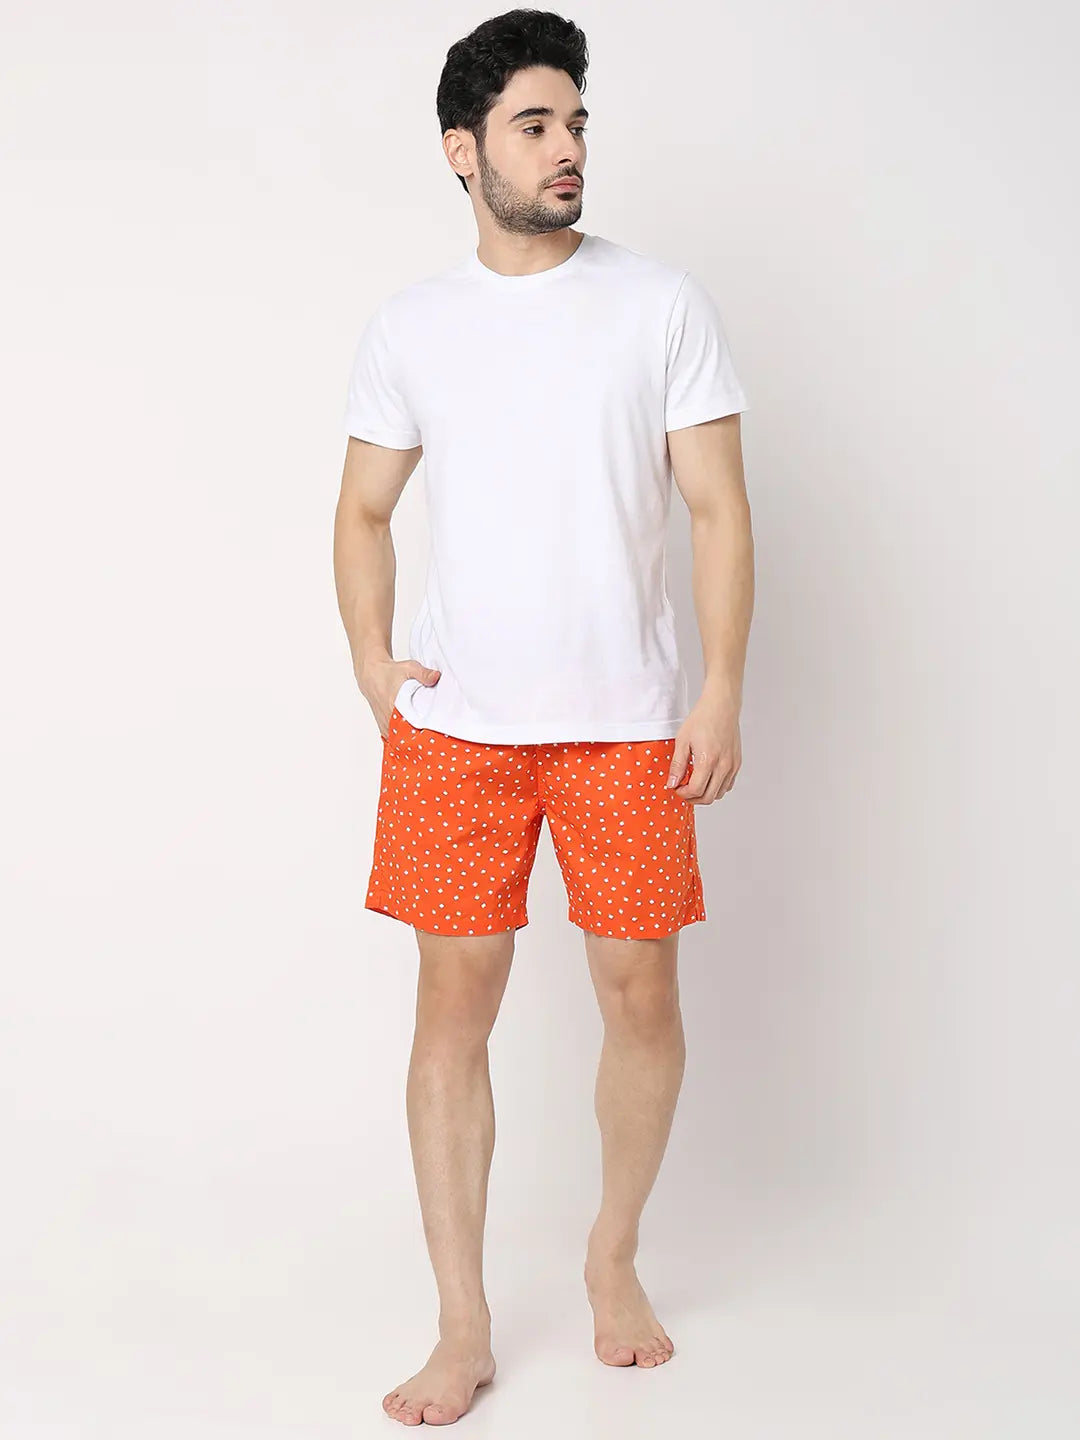 Underjeans by Spykar Men Premium Orange Cotton Blend Regular Fit Boxer Shorts